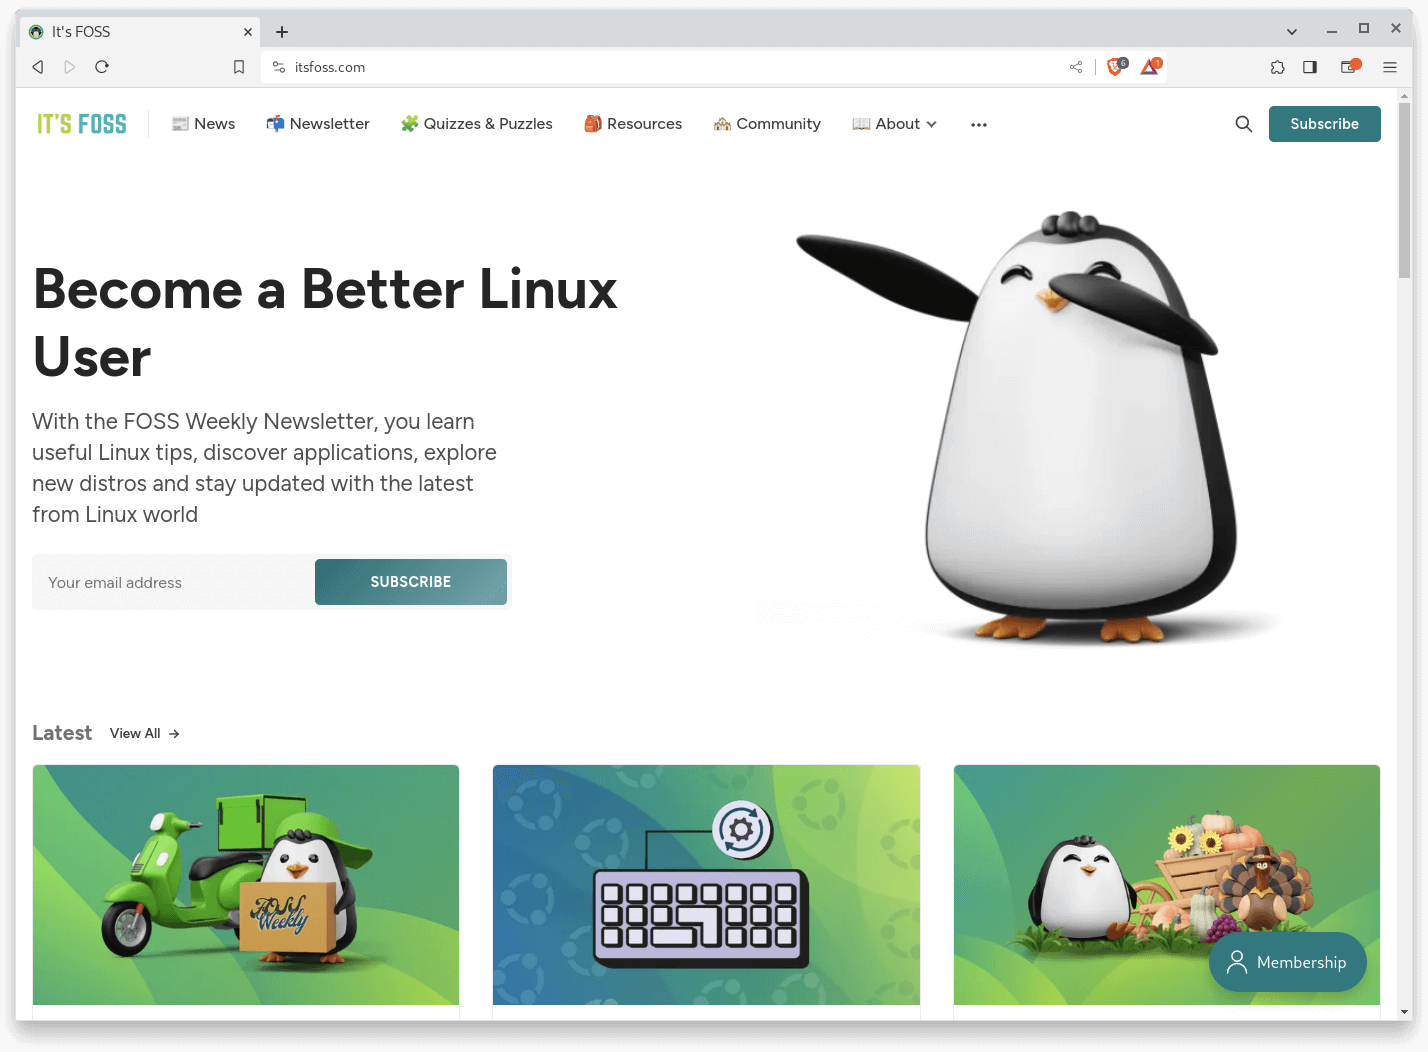 screenshot of brave browser featuring itsfoss.com